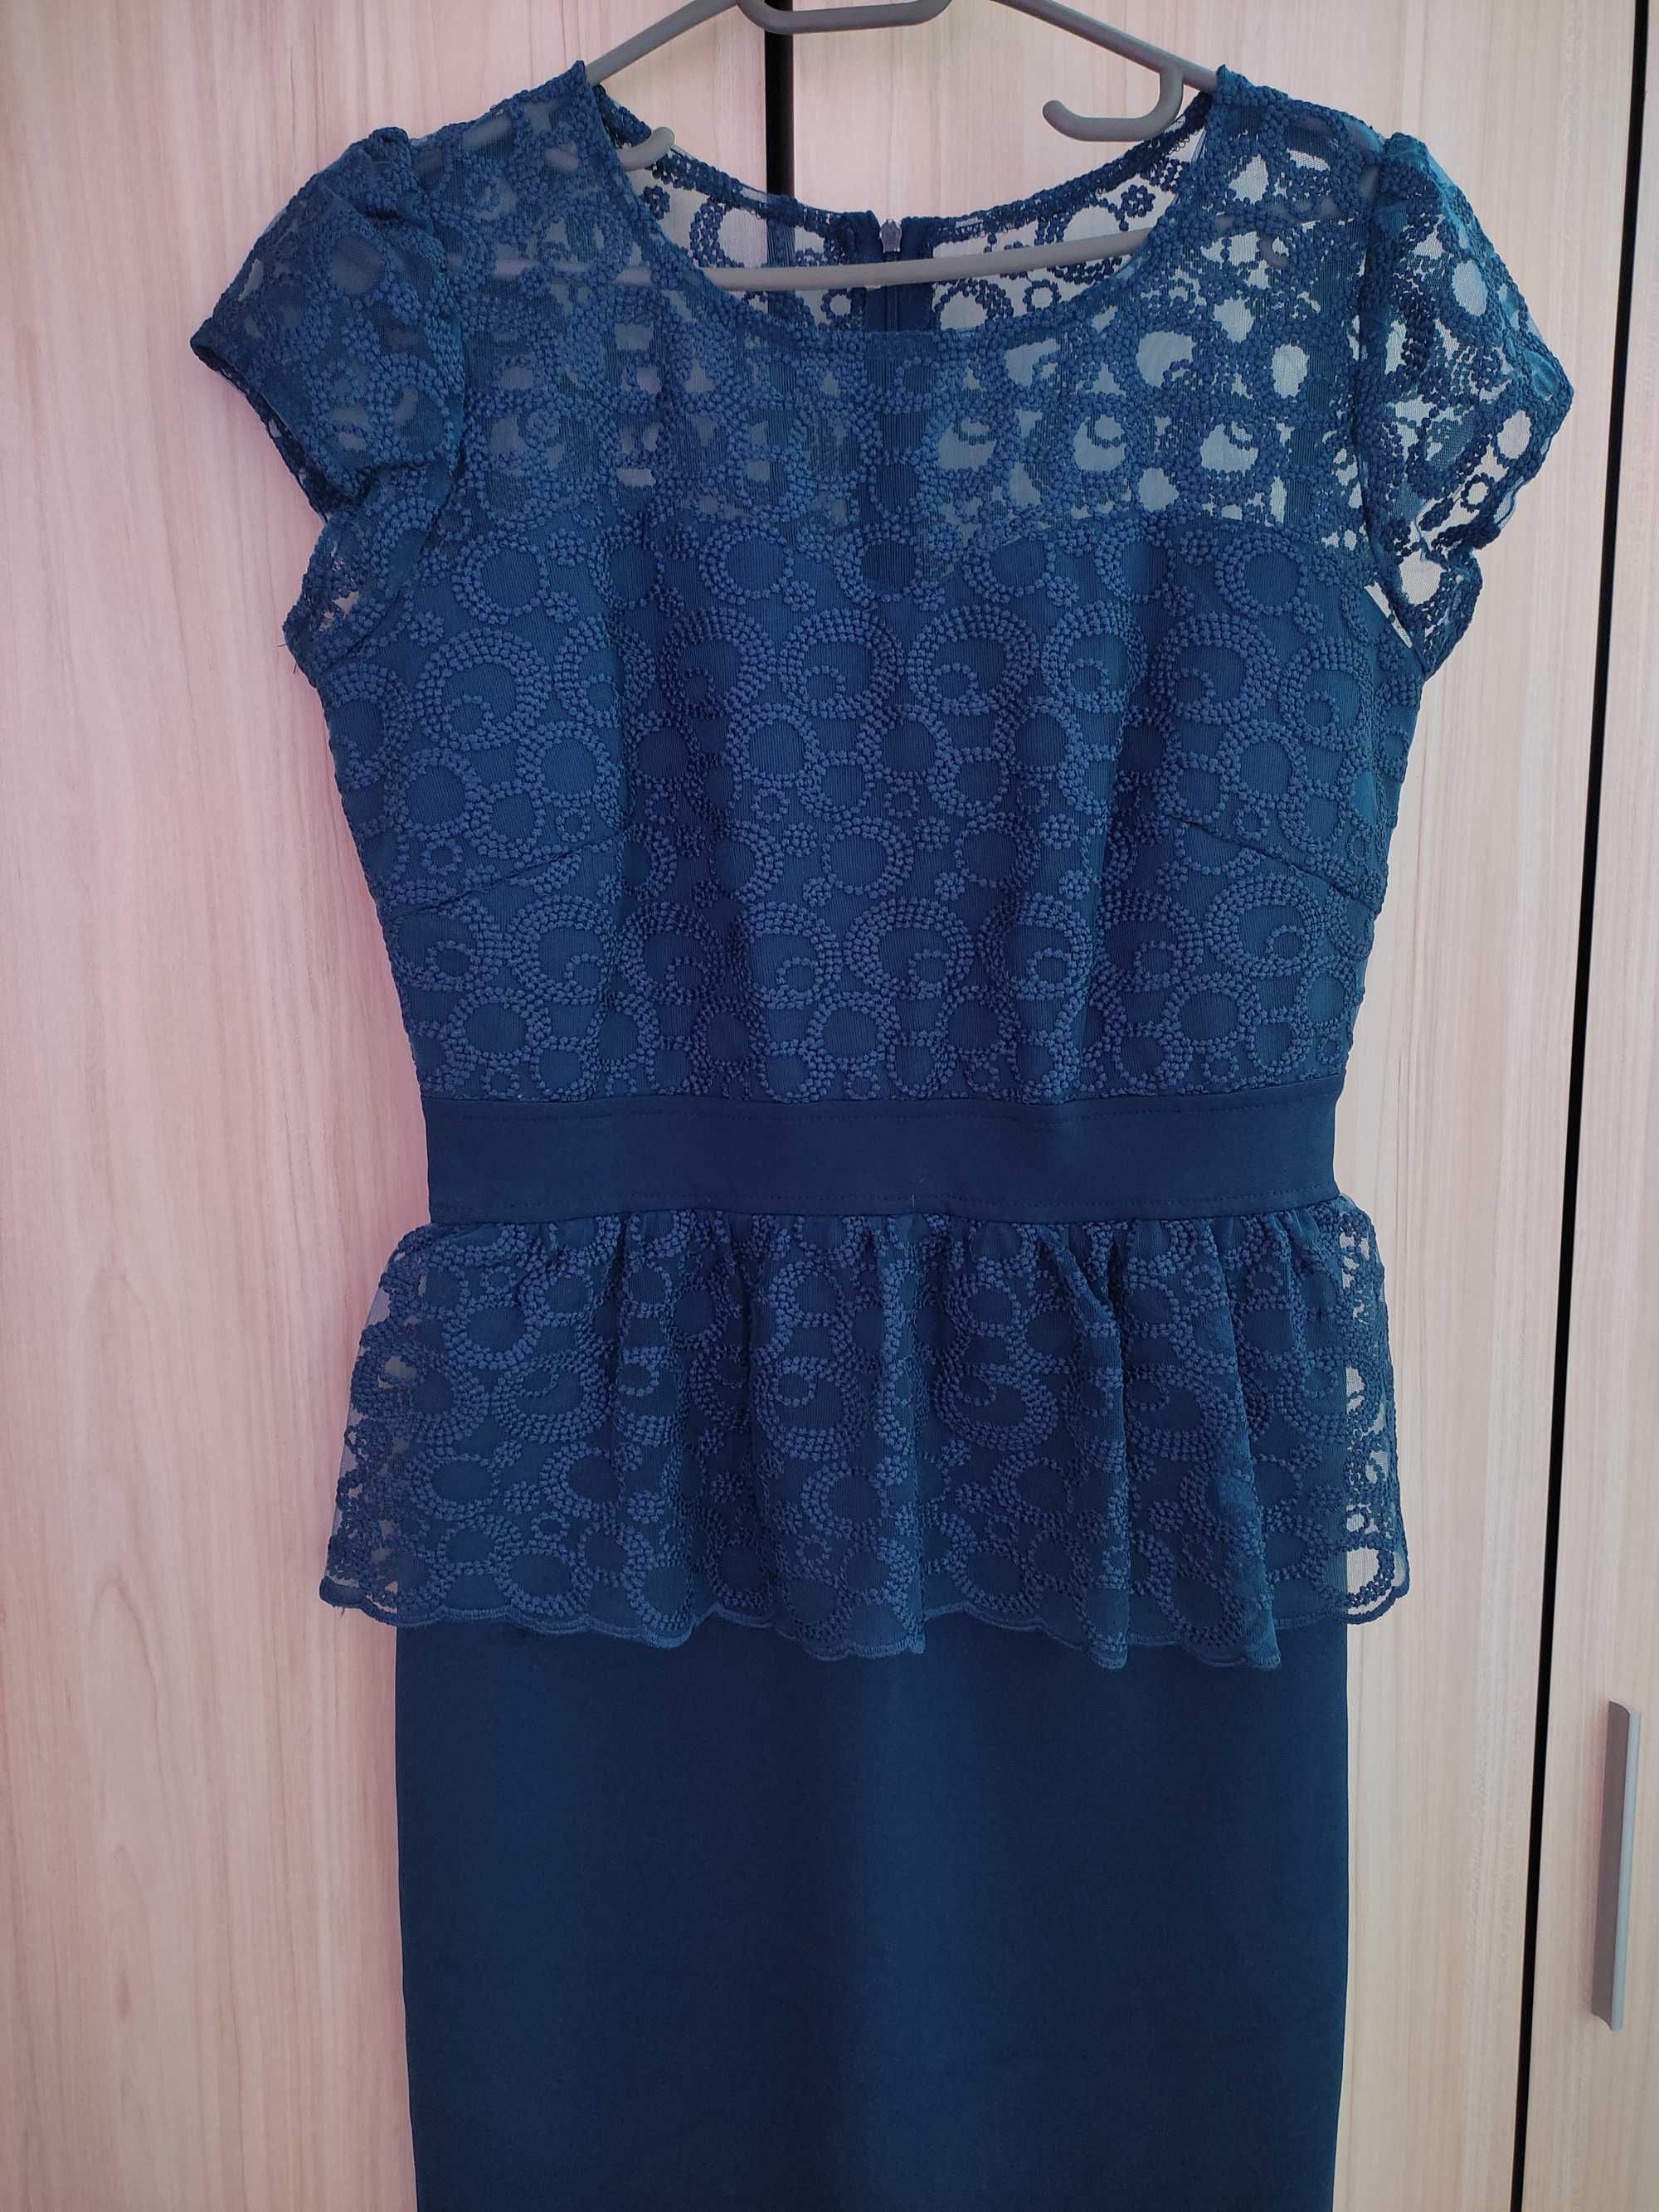 Дамска тъмно синя рокля М/Л